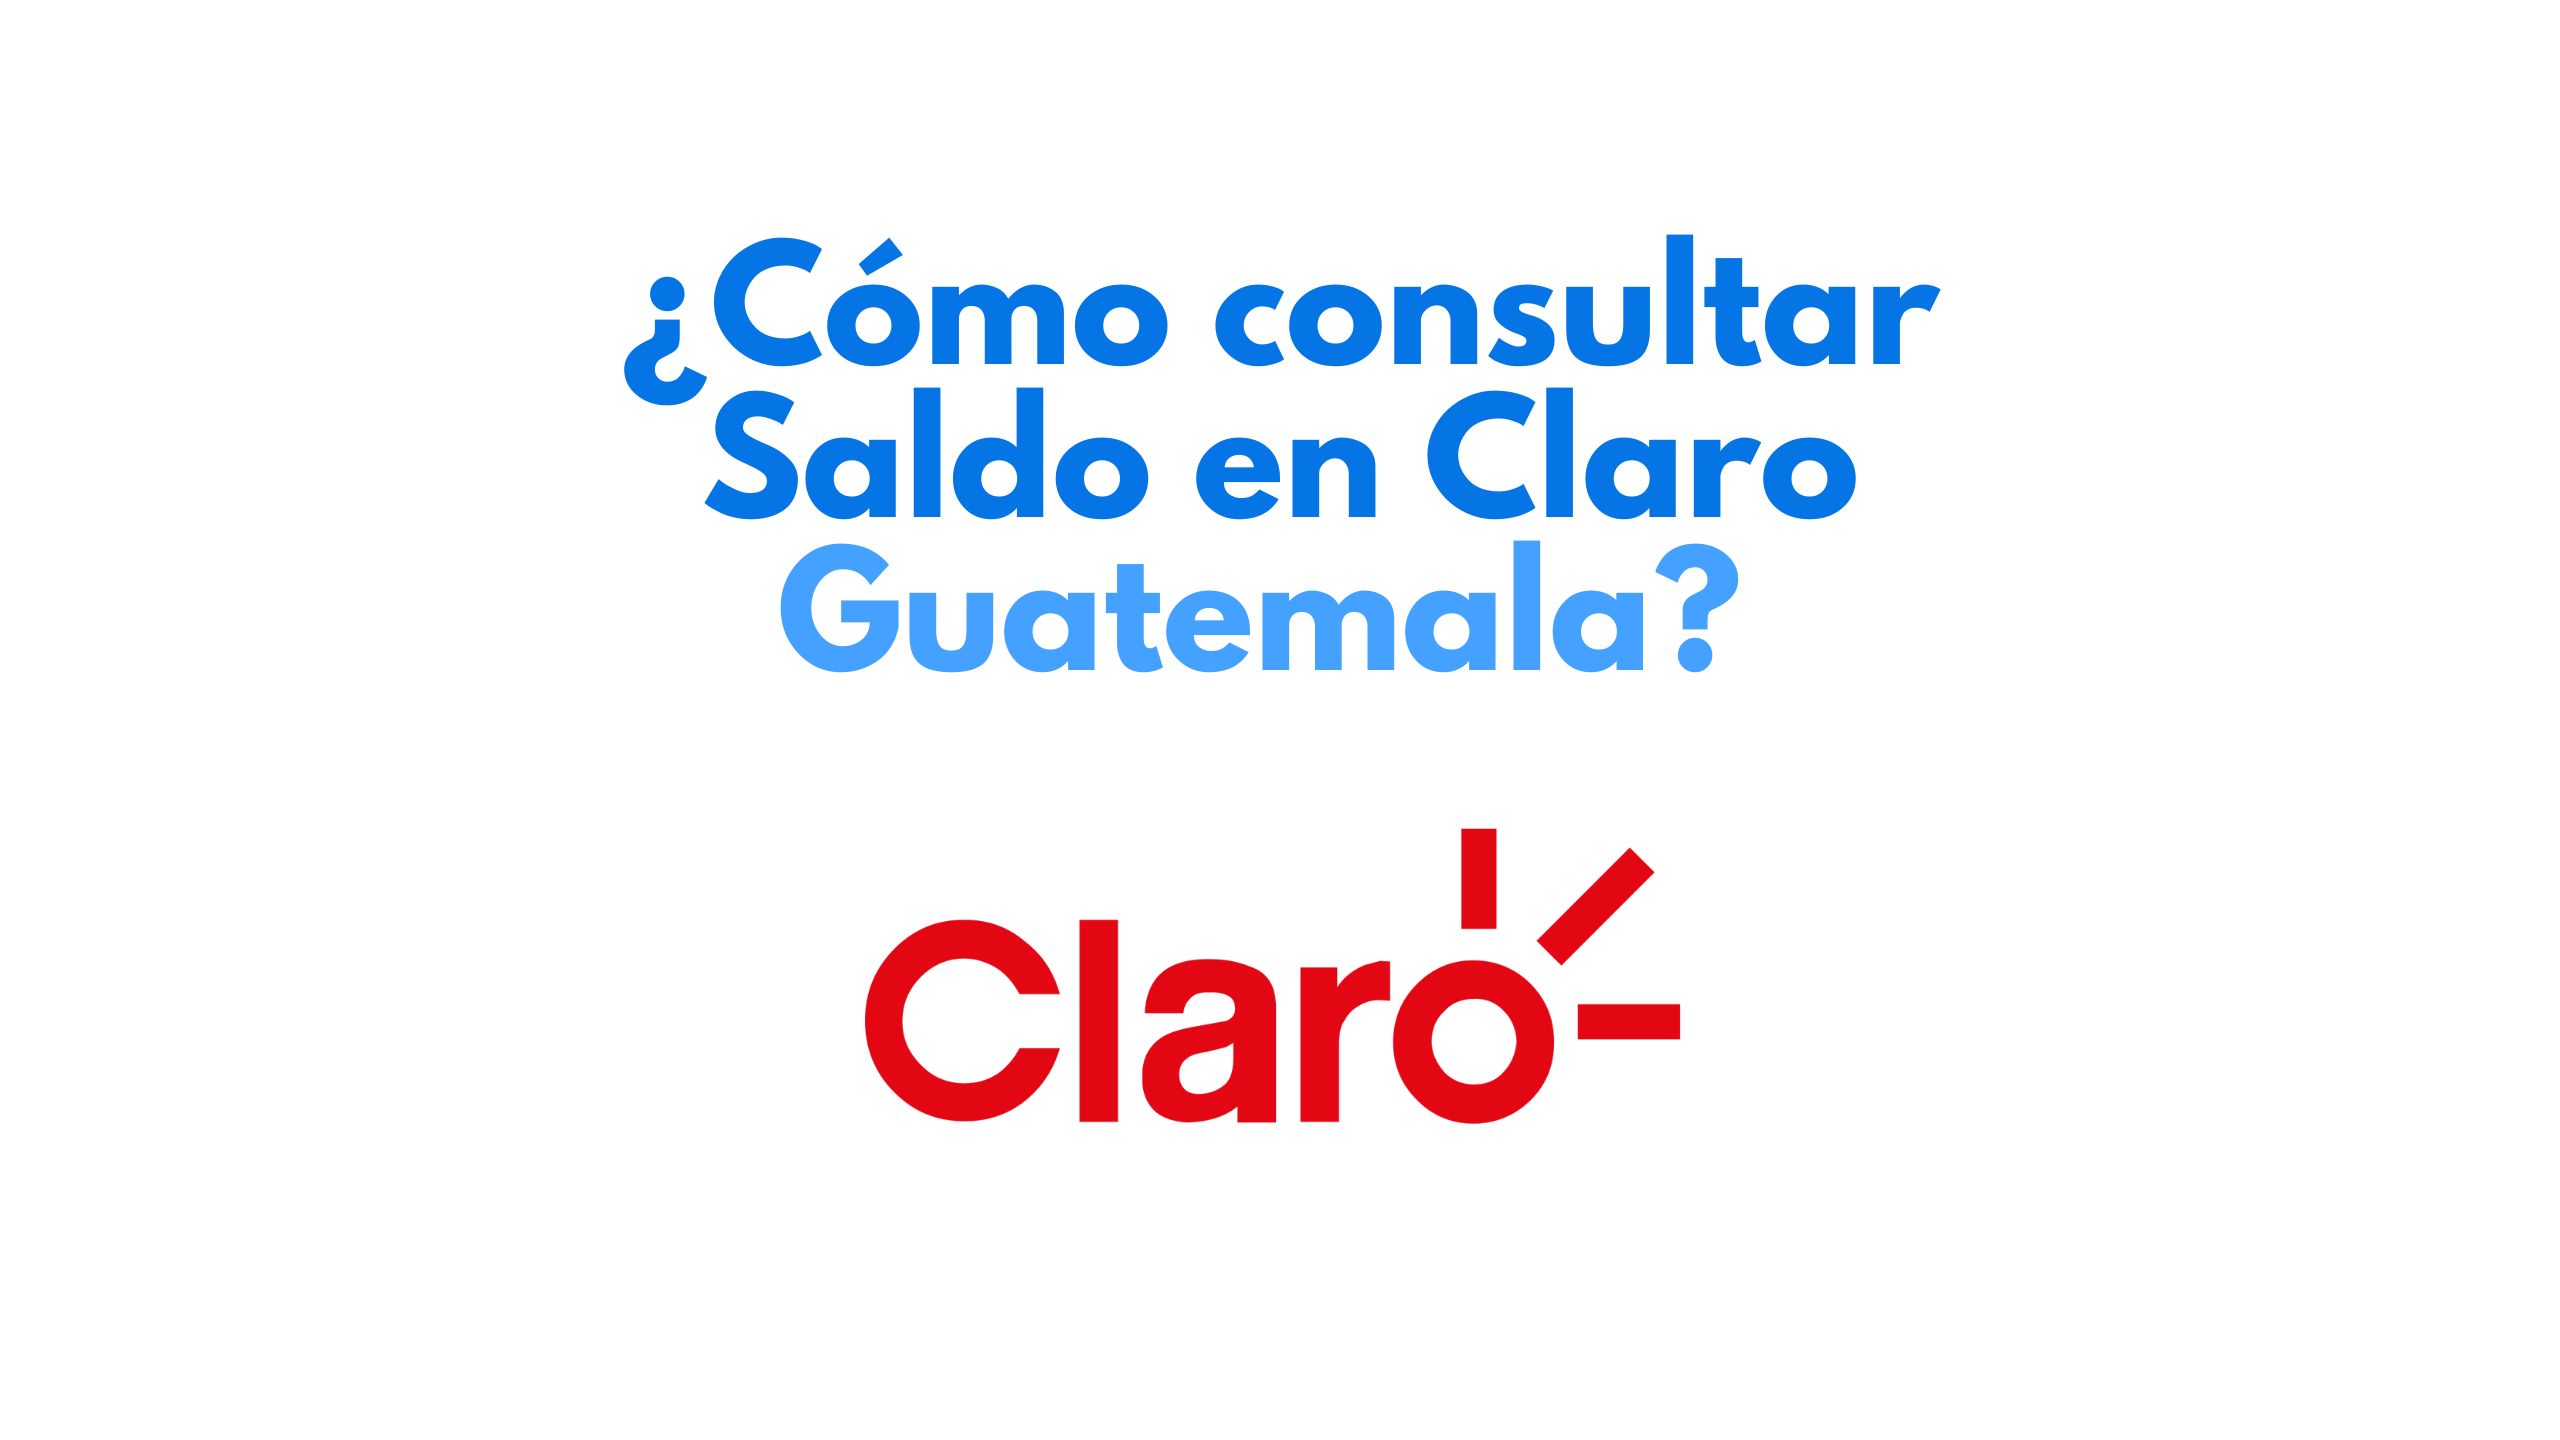 ¿Cómo consultar saldo en claro Guatemala?